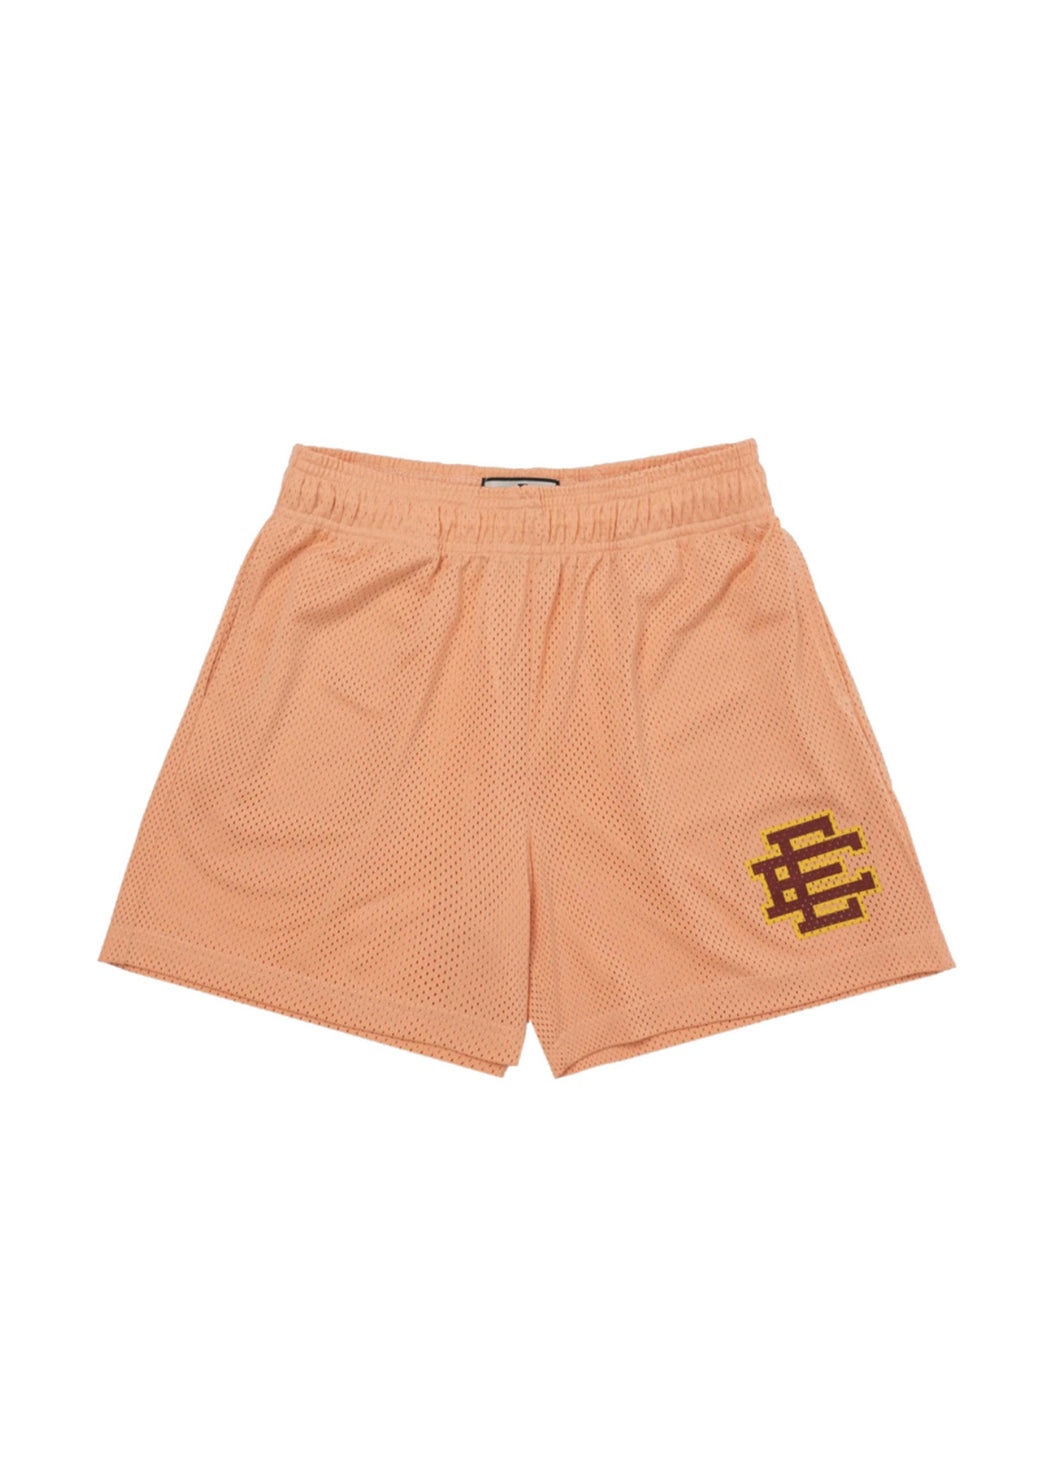 Eric Emanuel EE Basic Shorts 